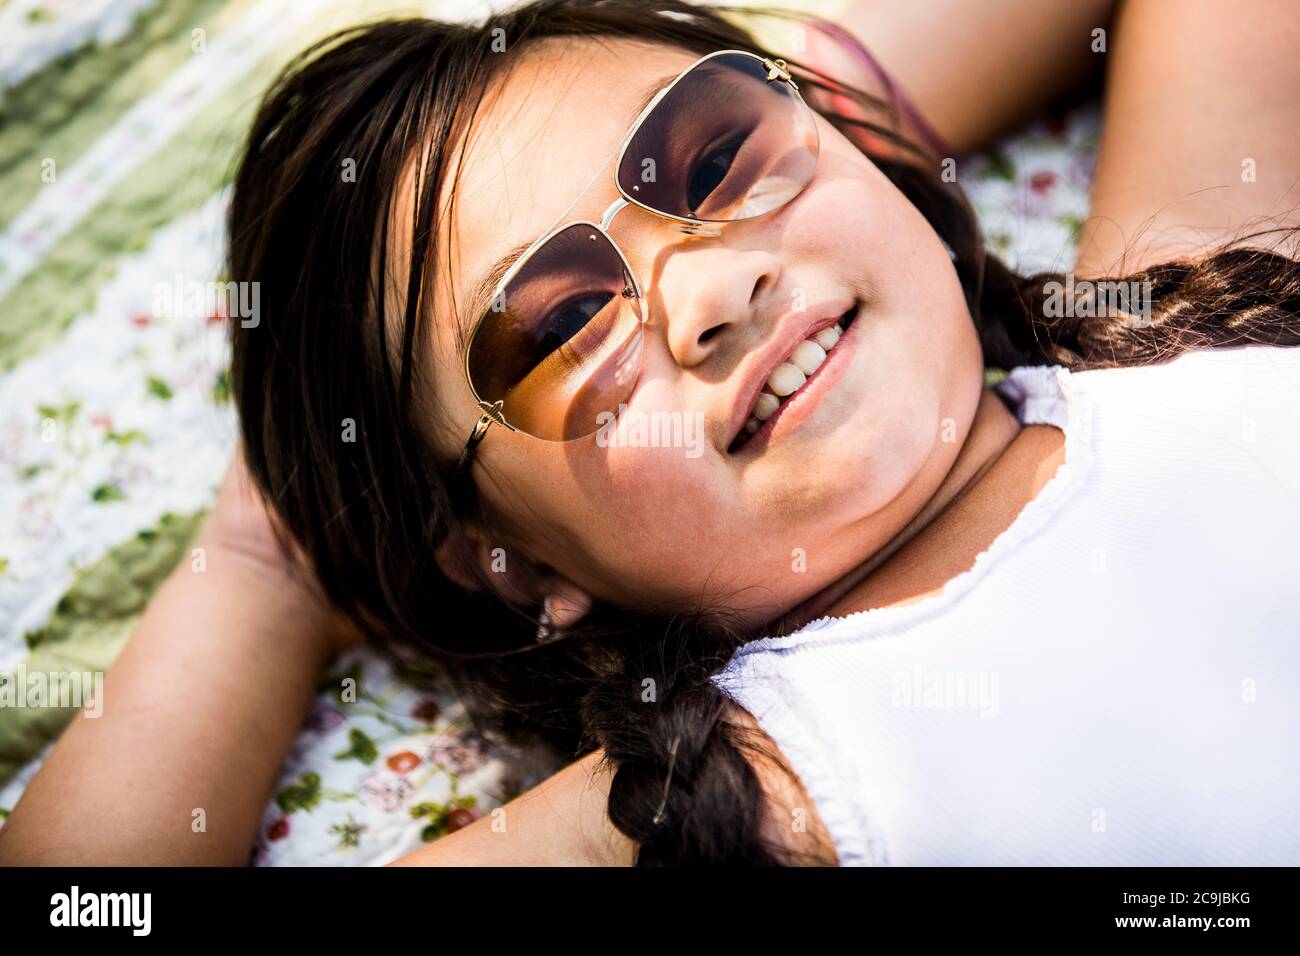 Girl lying on blanket in park, smiling, portrait. Stock Photo